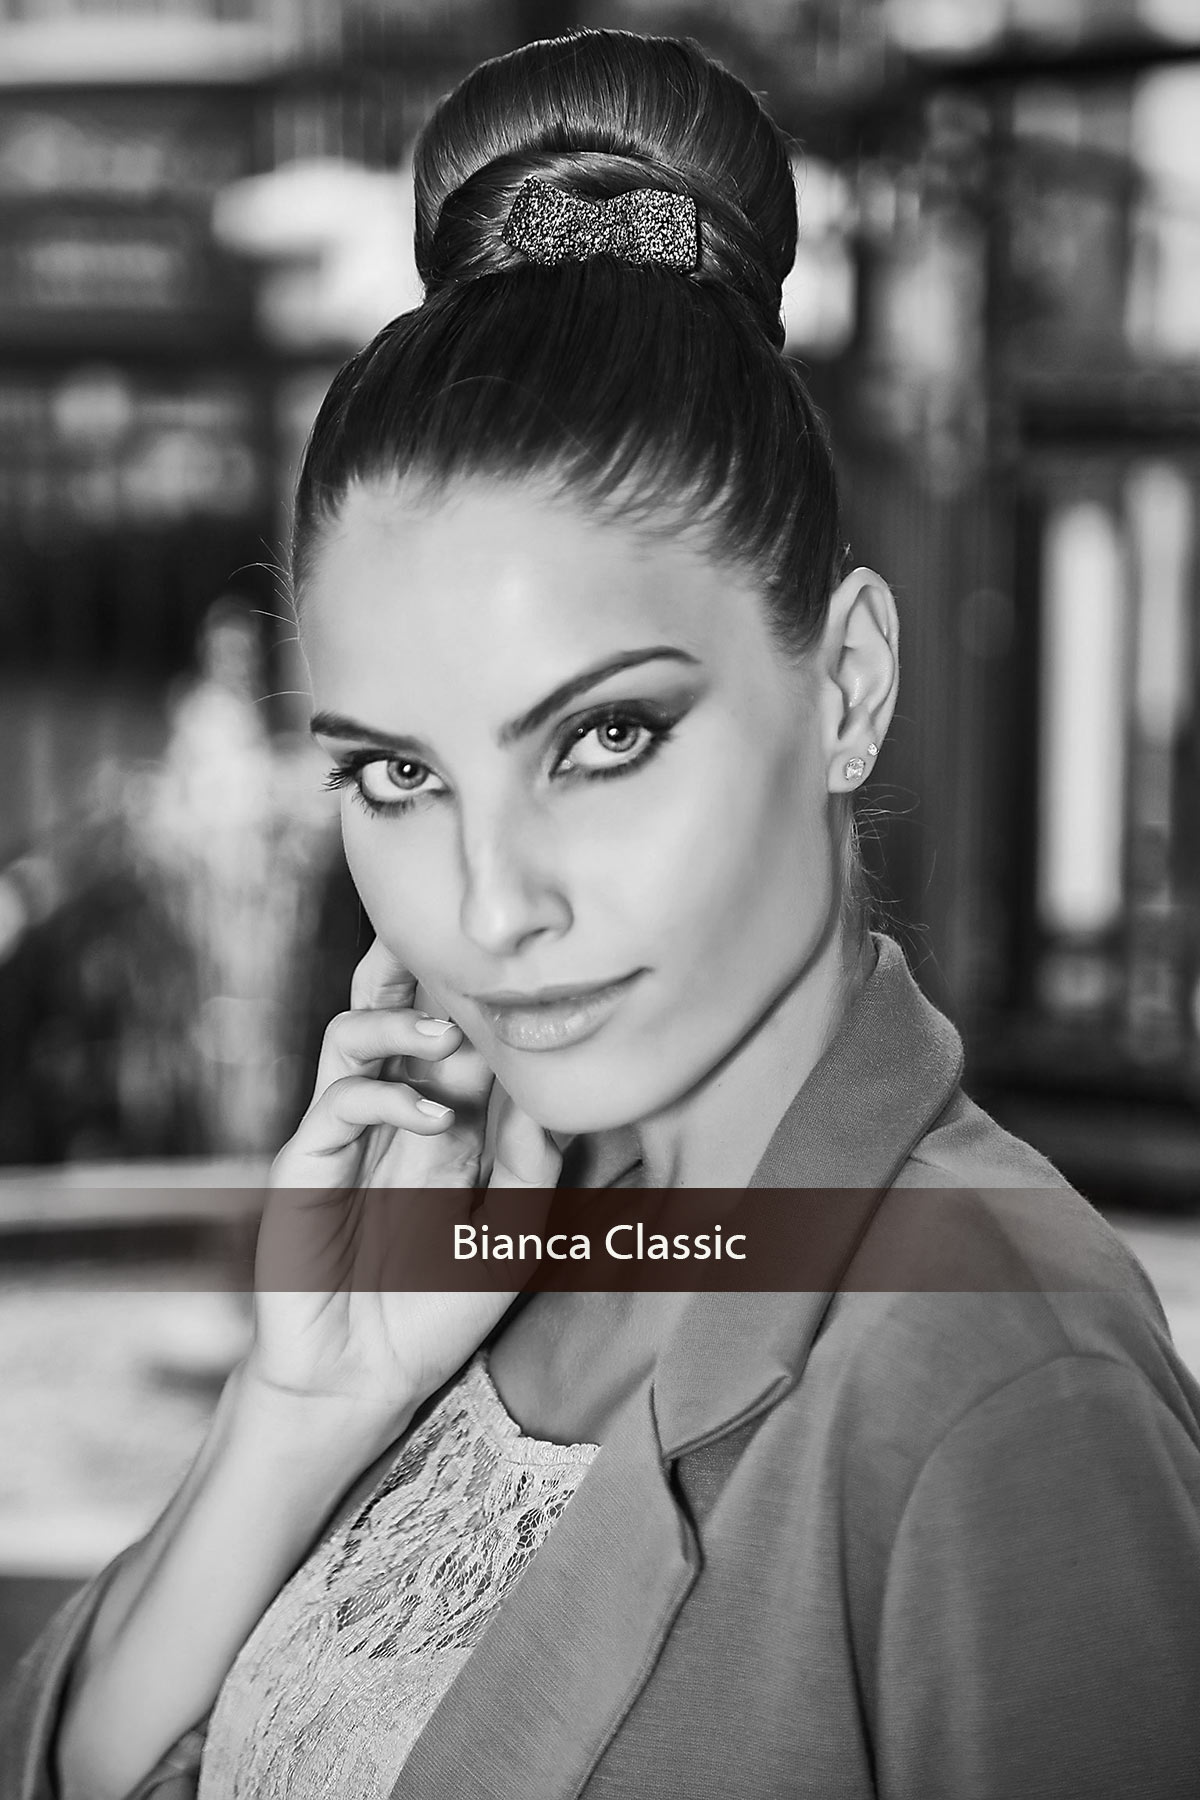 Bianca Classic